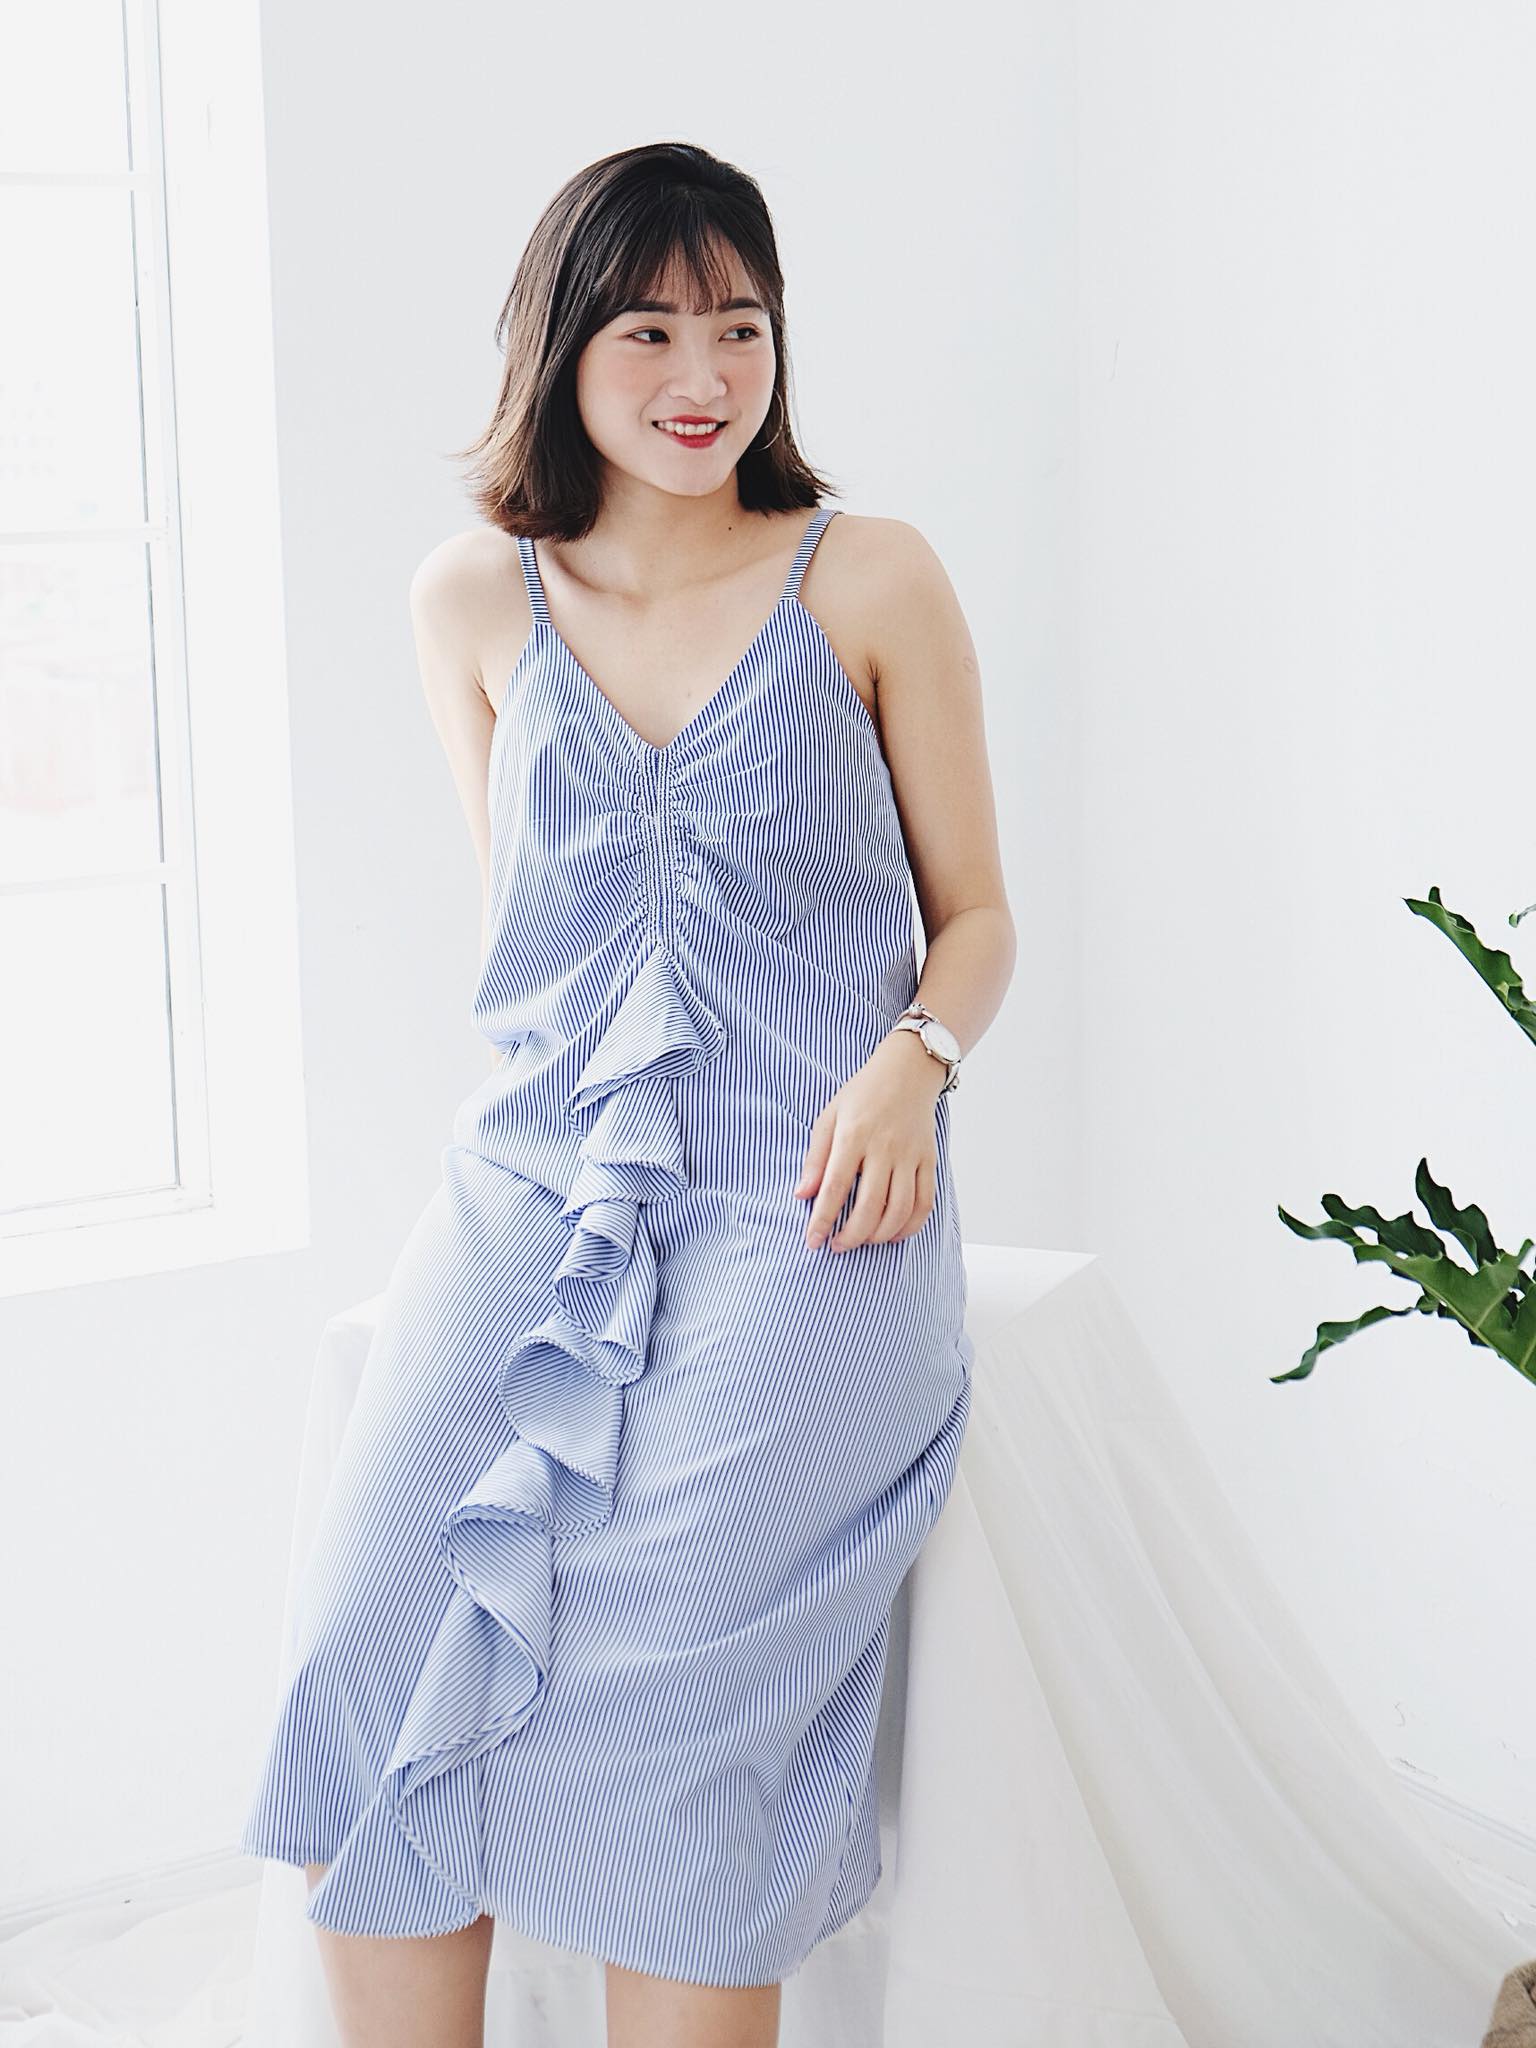 Top n shop bán quần áo đẹp nhất Hà Nội